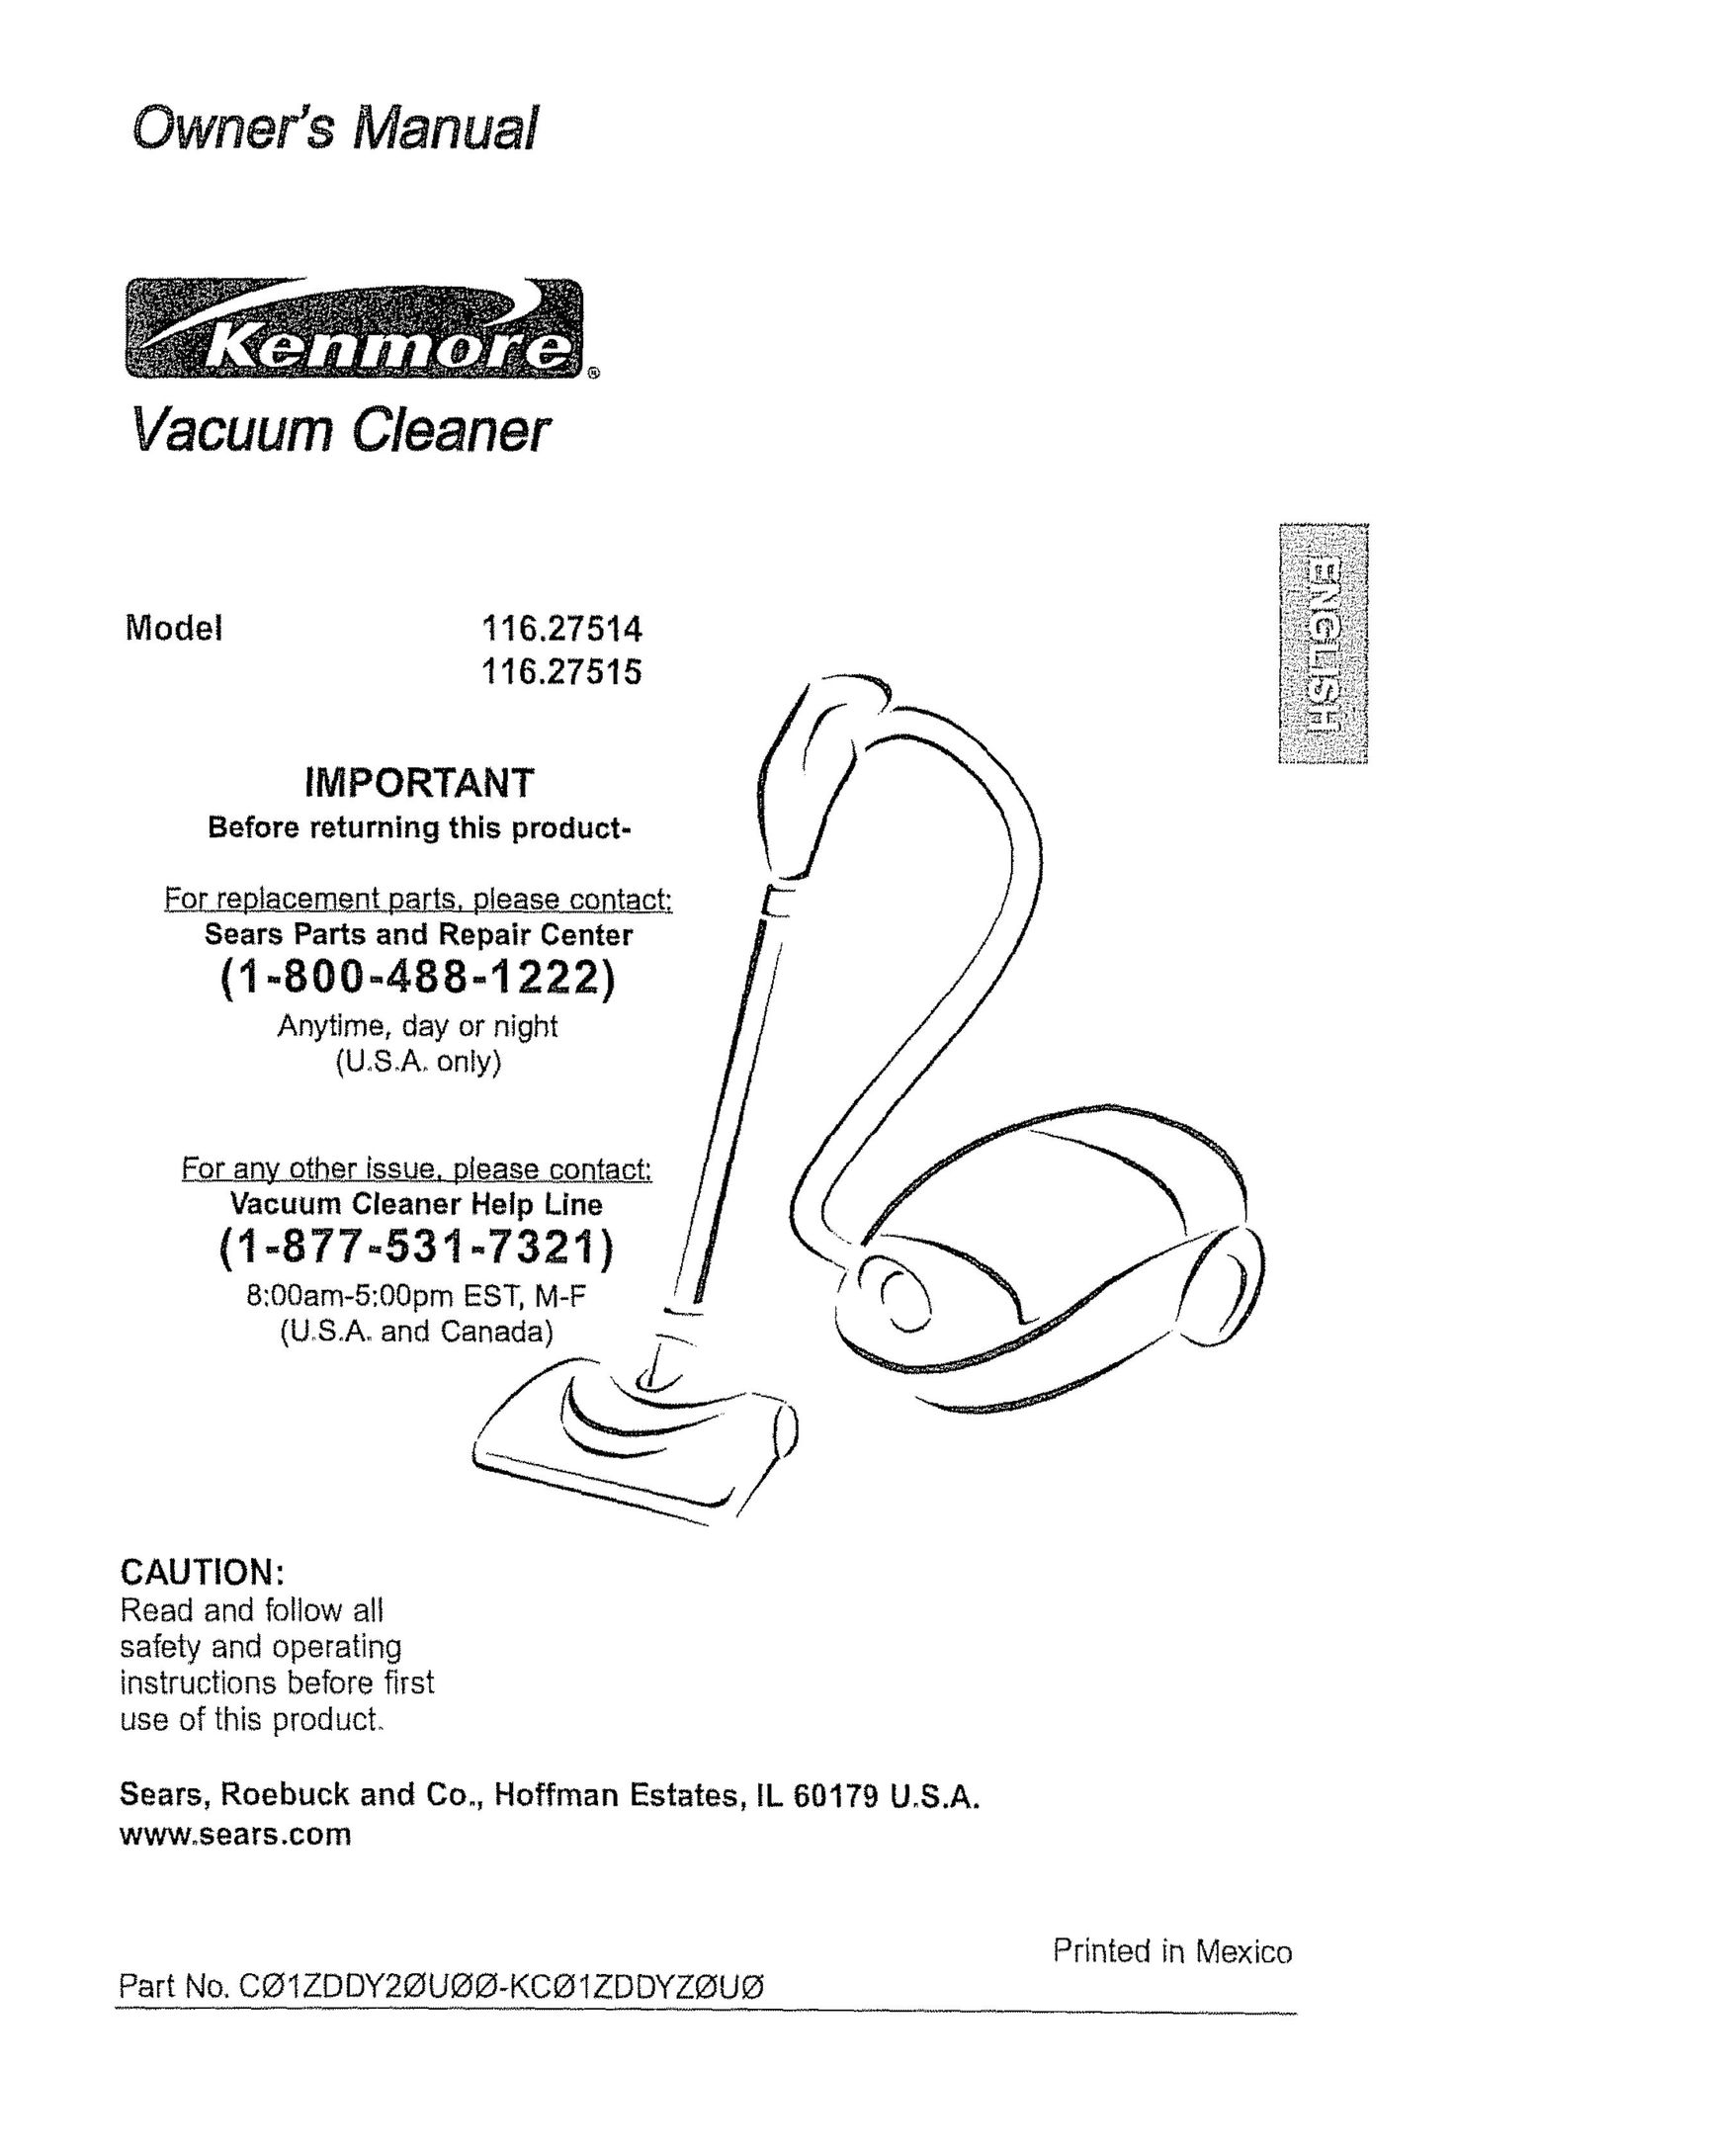 Kenmore 116.27515 Vacuum Cleaner User Manual